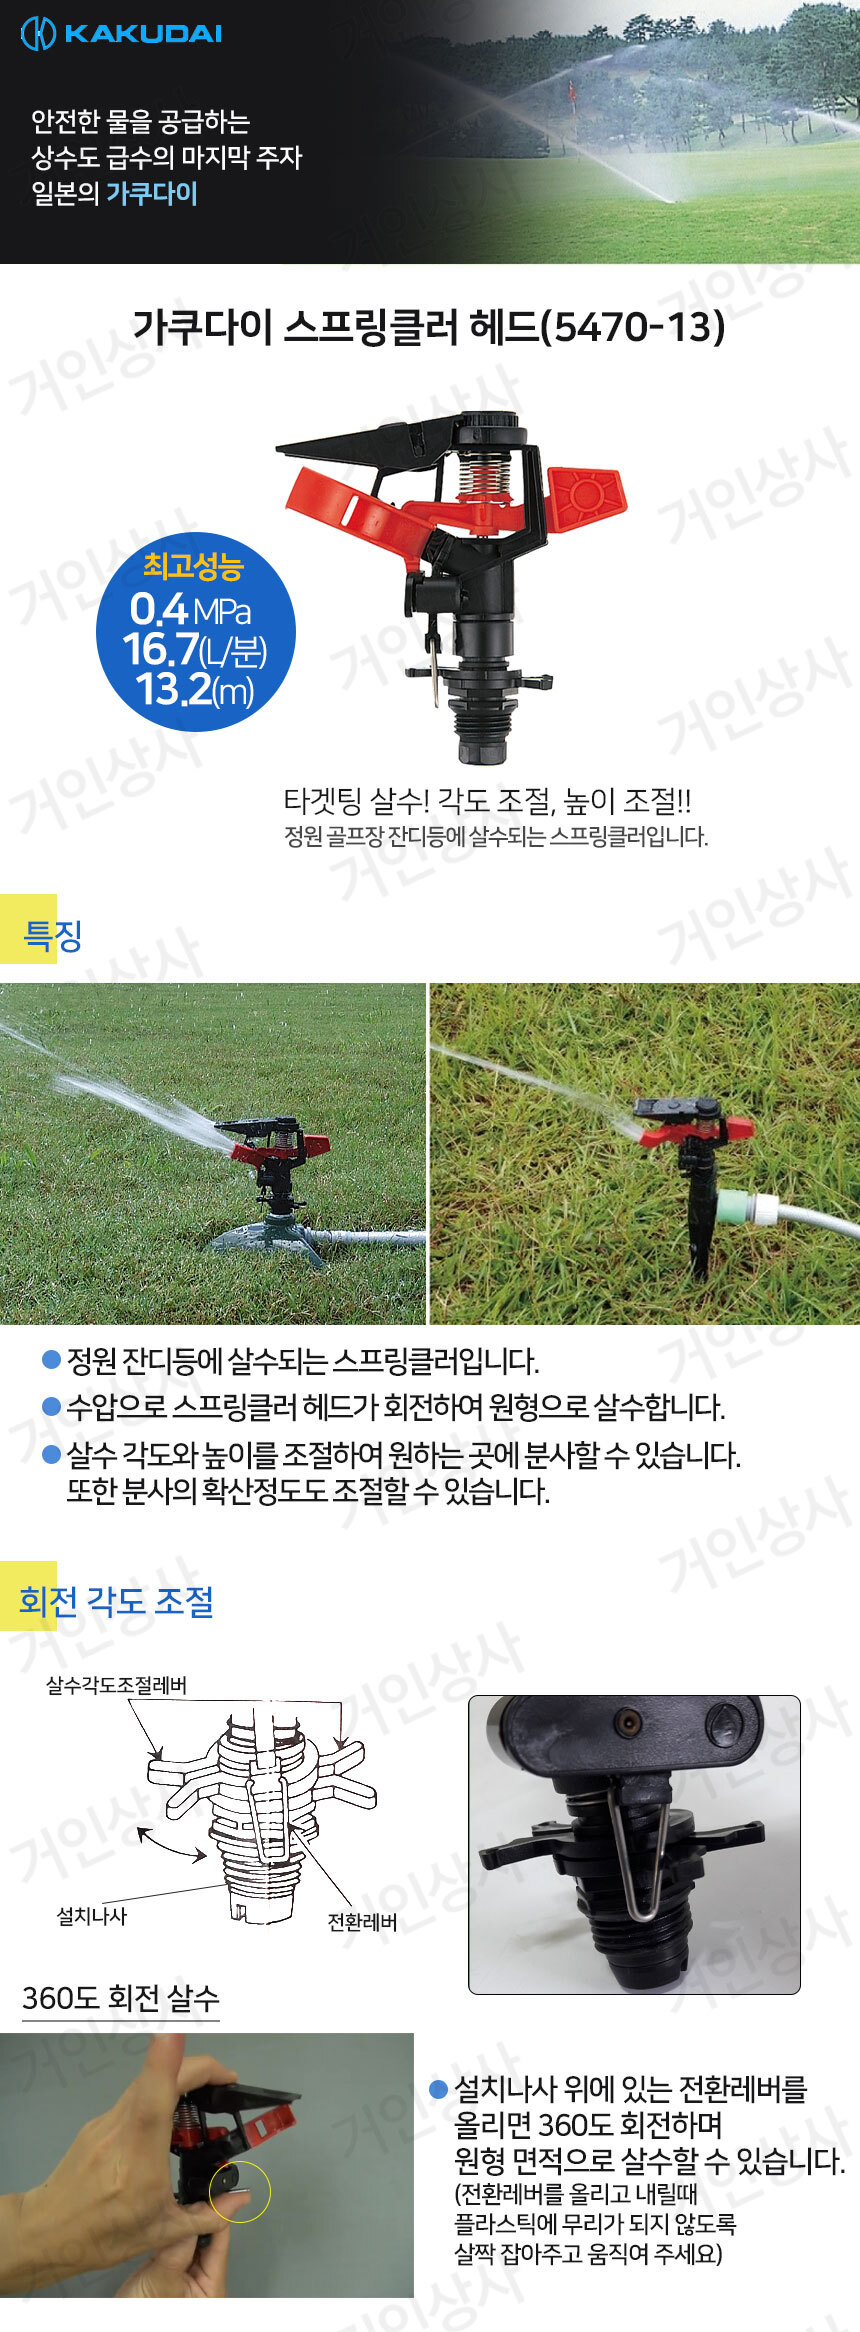 P-Sprinkler5470-13_detail1.jpg